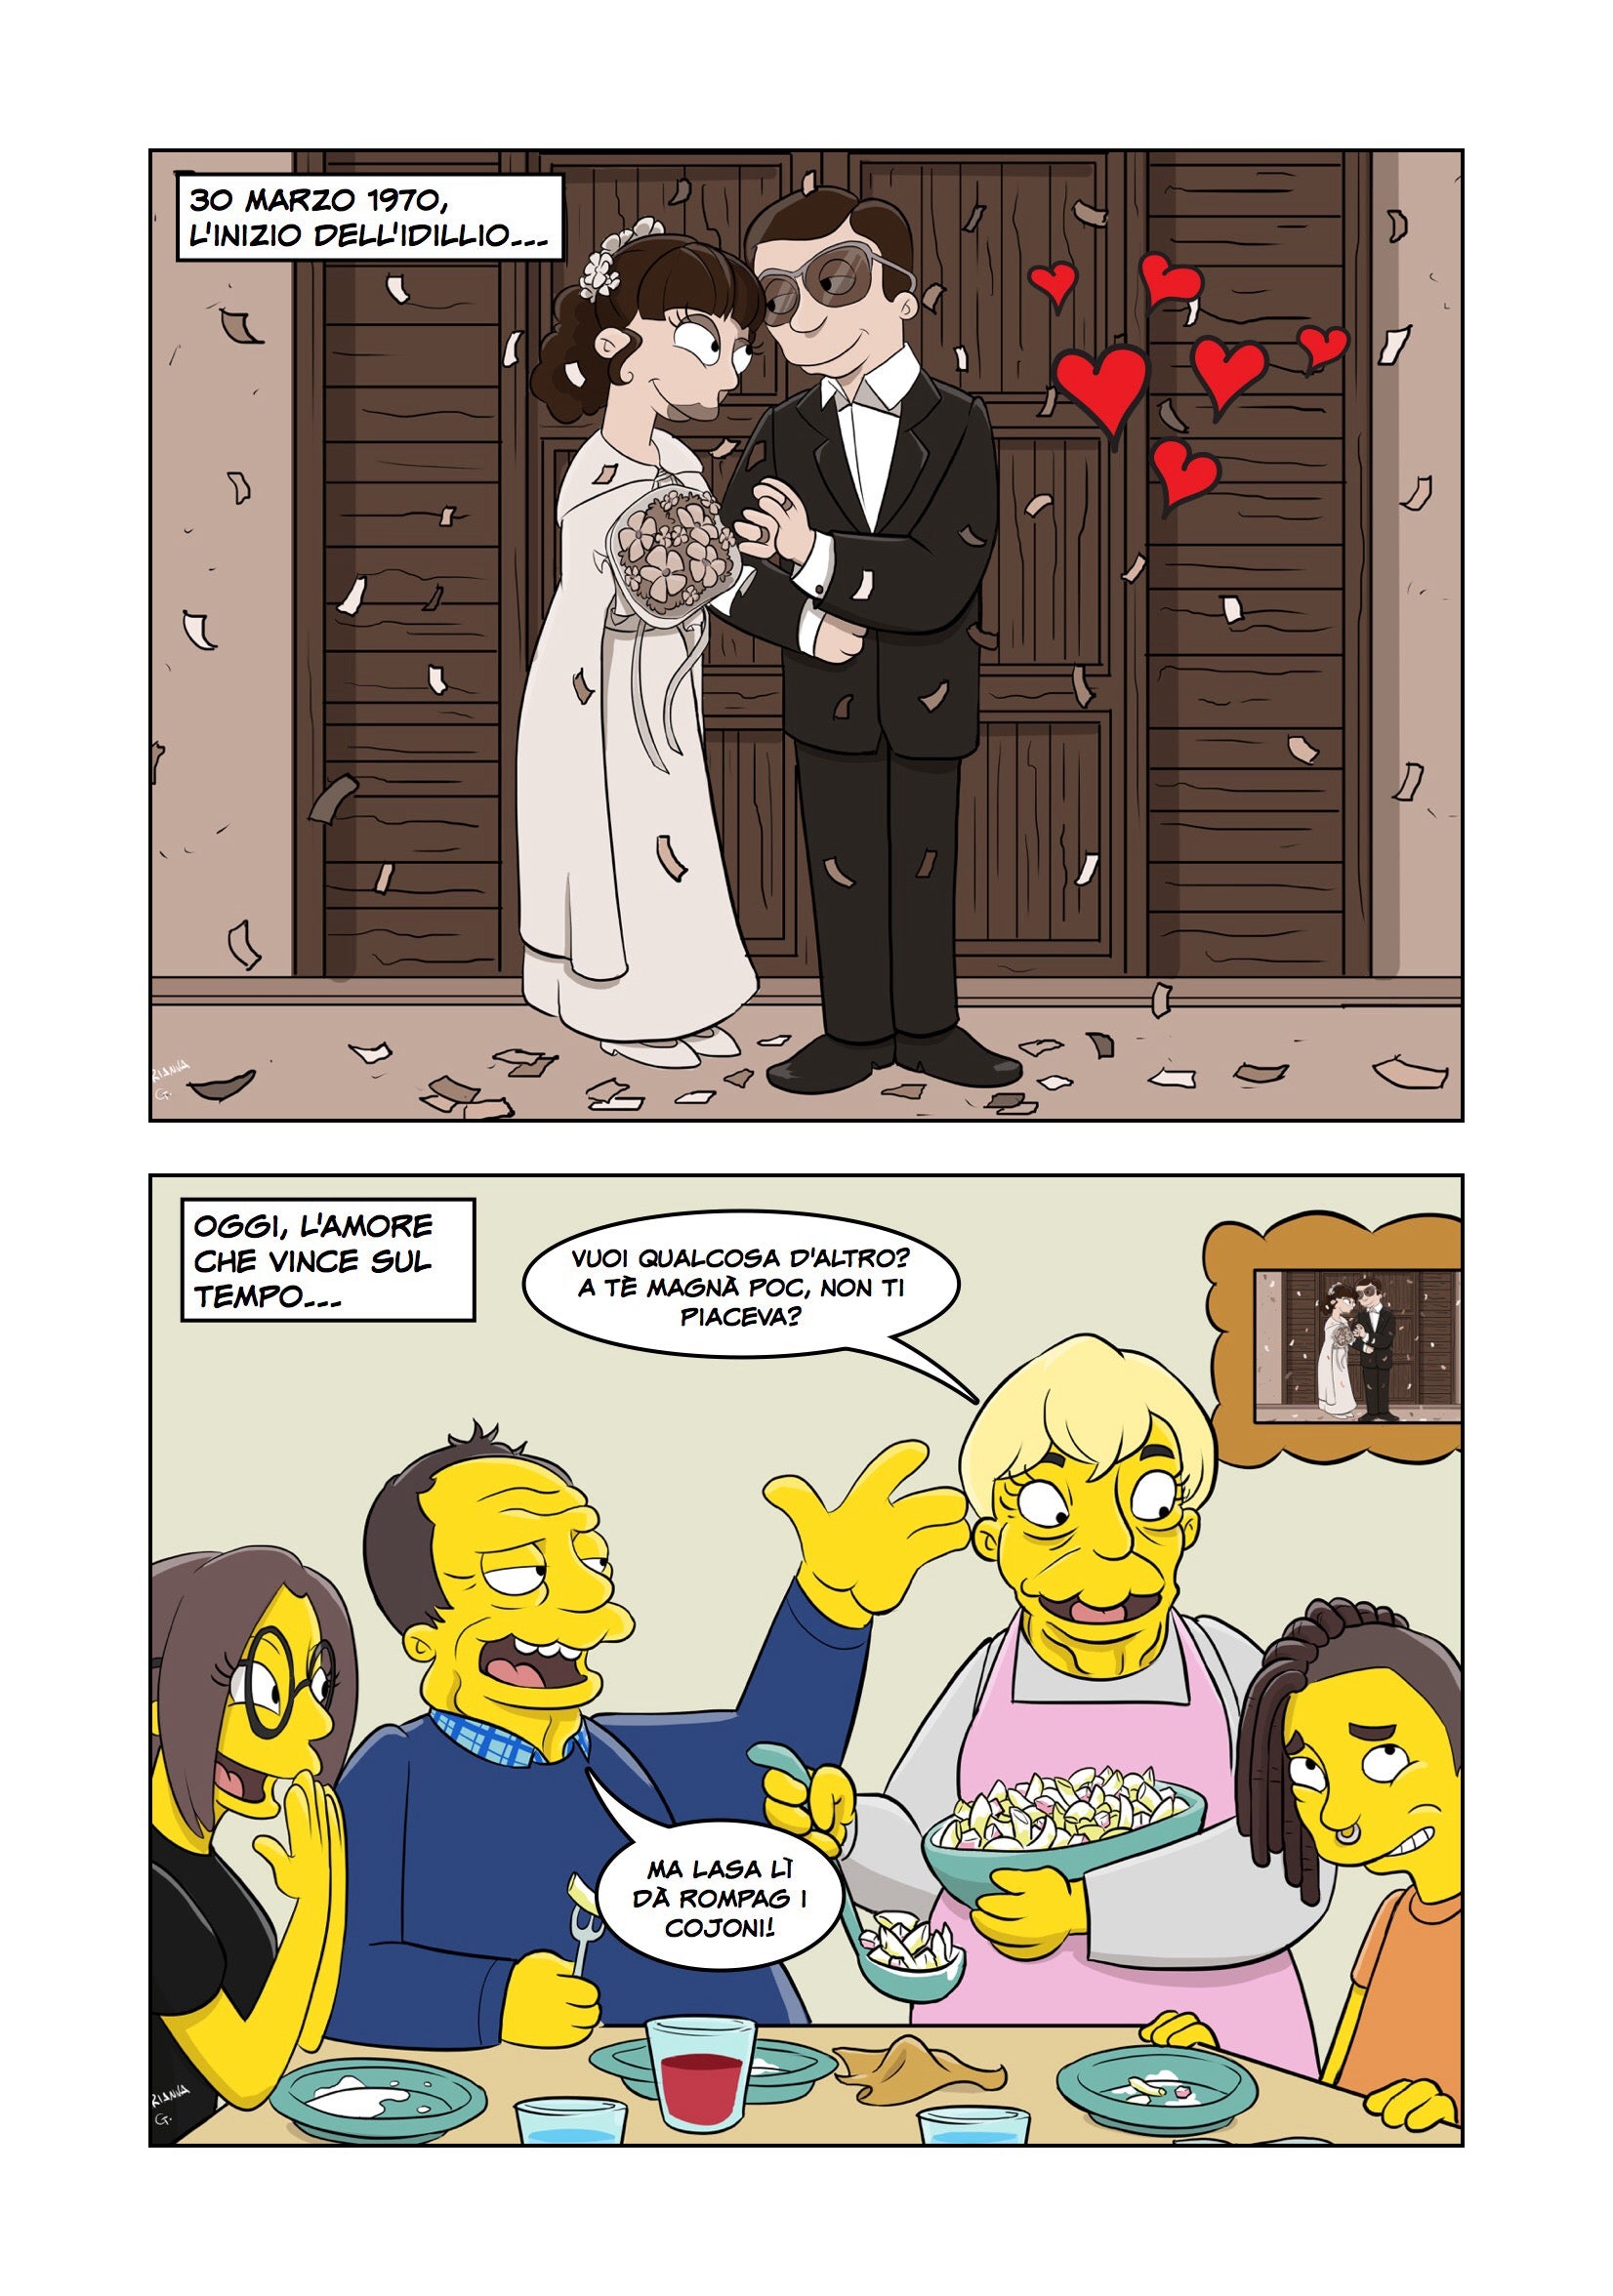 50 Anni Di Matrimonio Per Homer E Marge Auguri Da Giorgia